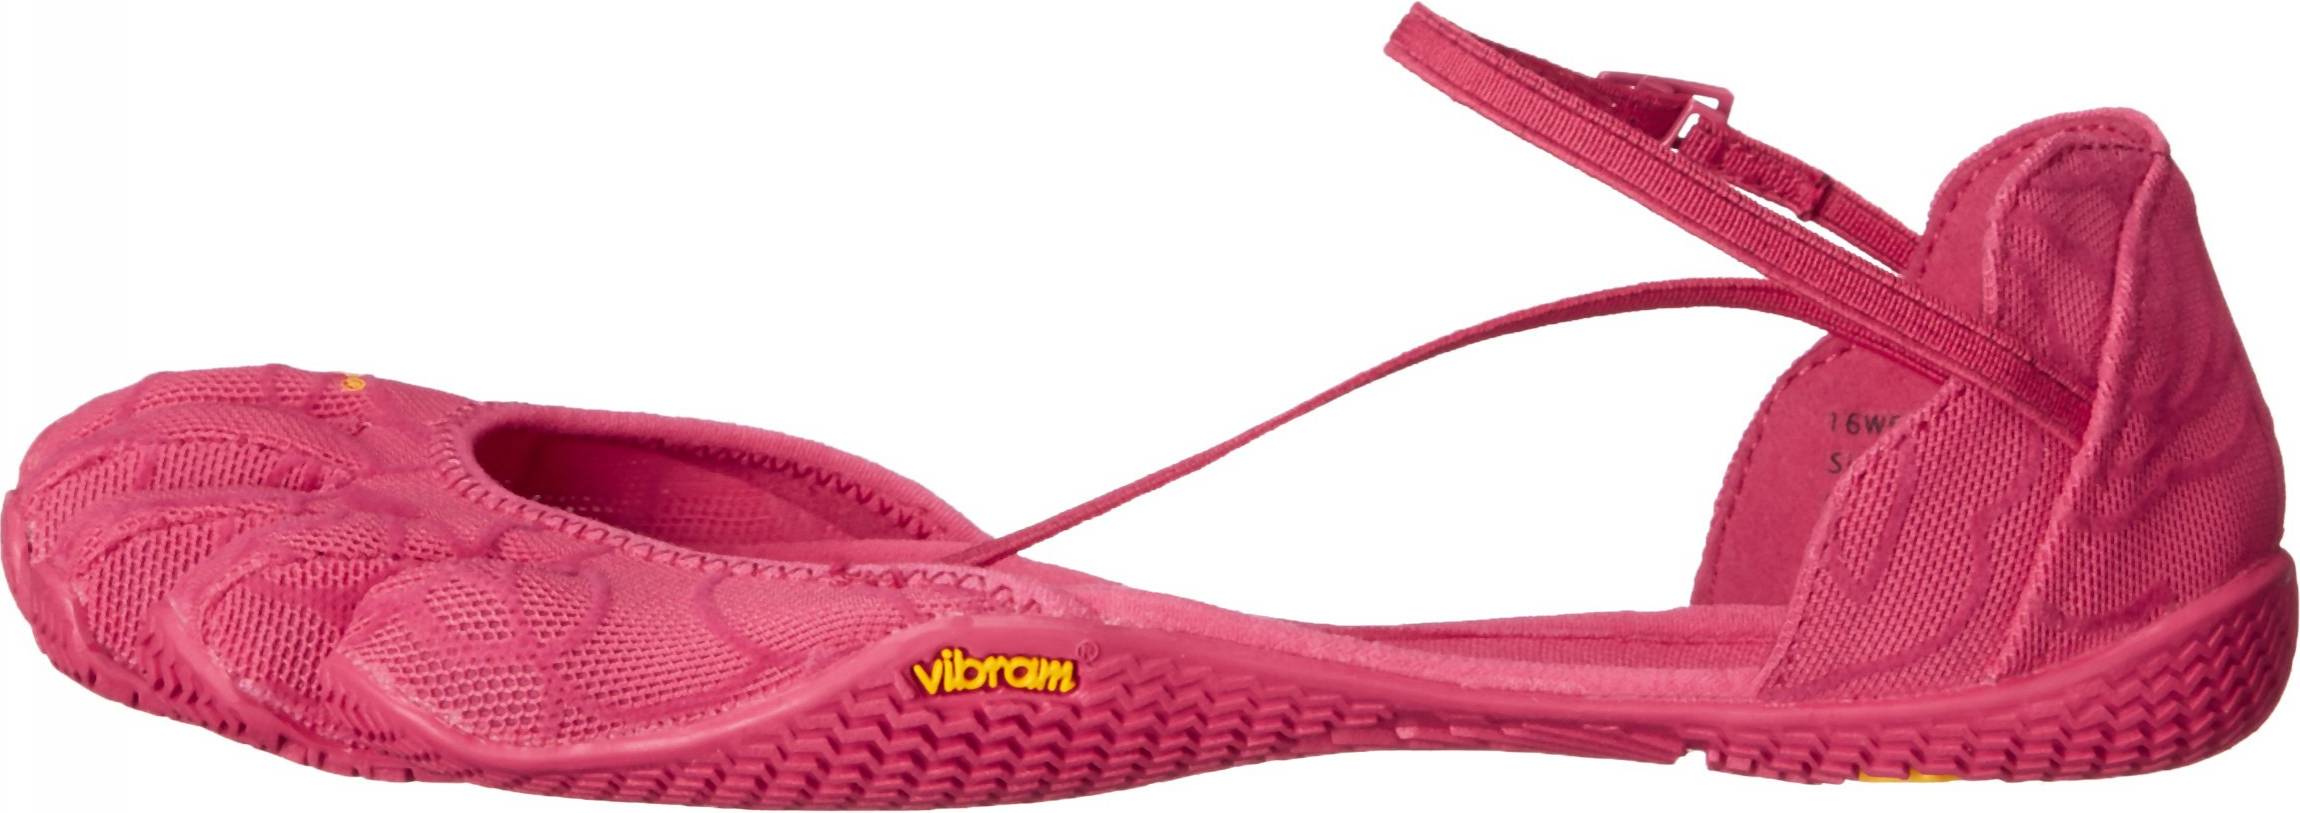 vibram five finger shoes for women